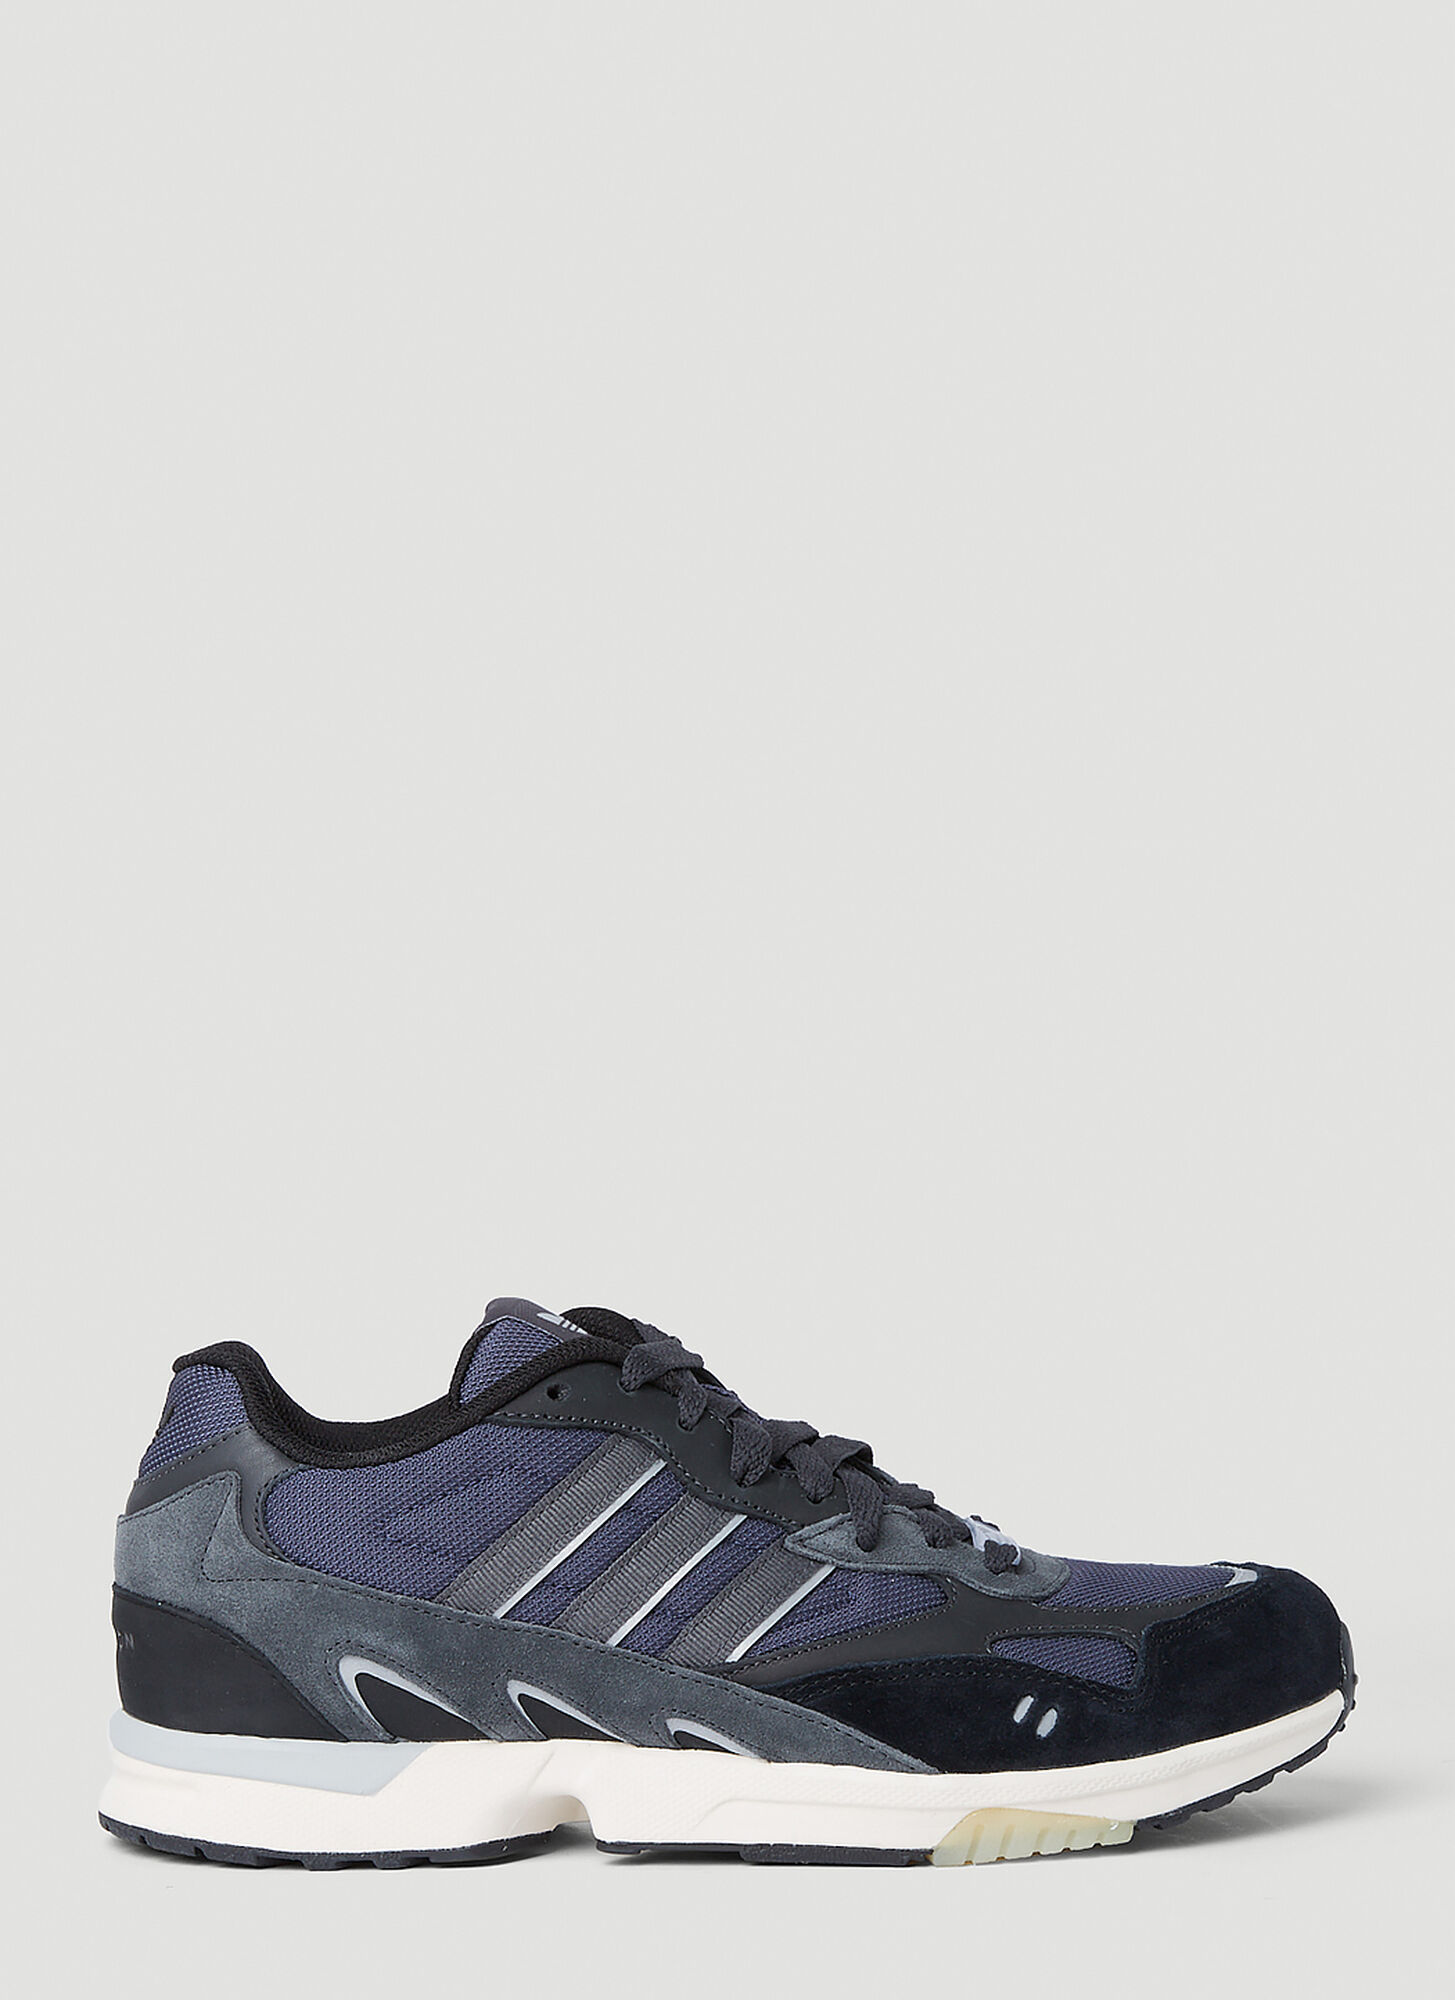 Adidas Originals Torsion Super Sneaker In Shadow Navy/grey Six/carbon